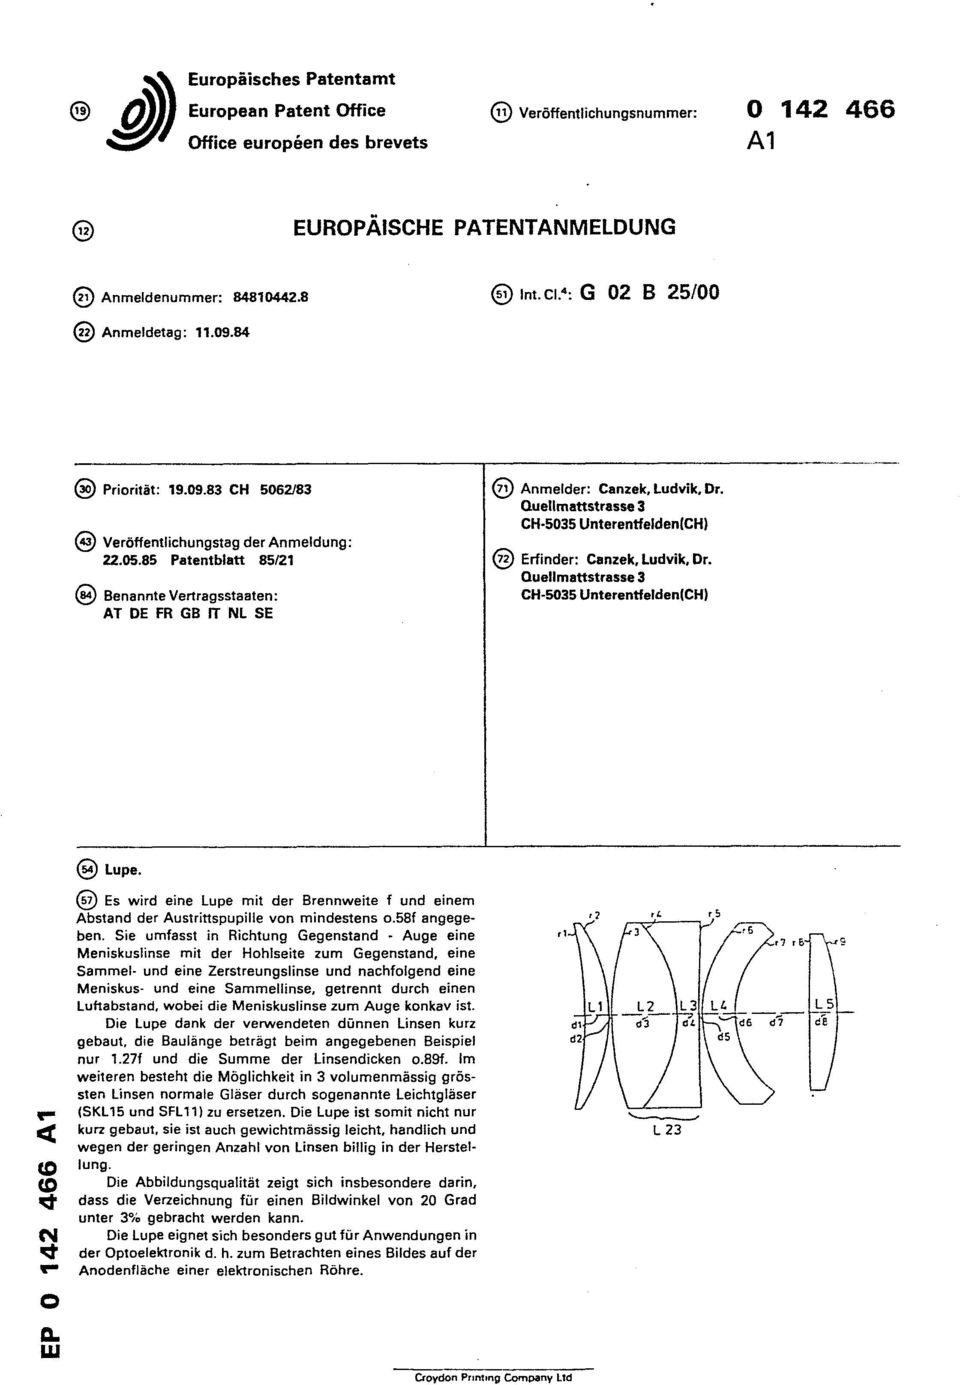 85 Patentblatt 85/21 Benannte Vertragsstaaten: AT DE FR GB IT NL SE Anmelder: Canzek, Ludvik, Dr. Quellmattstrasse 3 CH-5035 Unterentfelden(CH) Erfinder: Canzek, Ludvik, Dr.